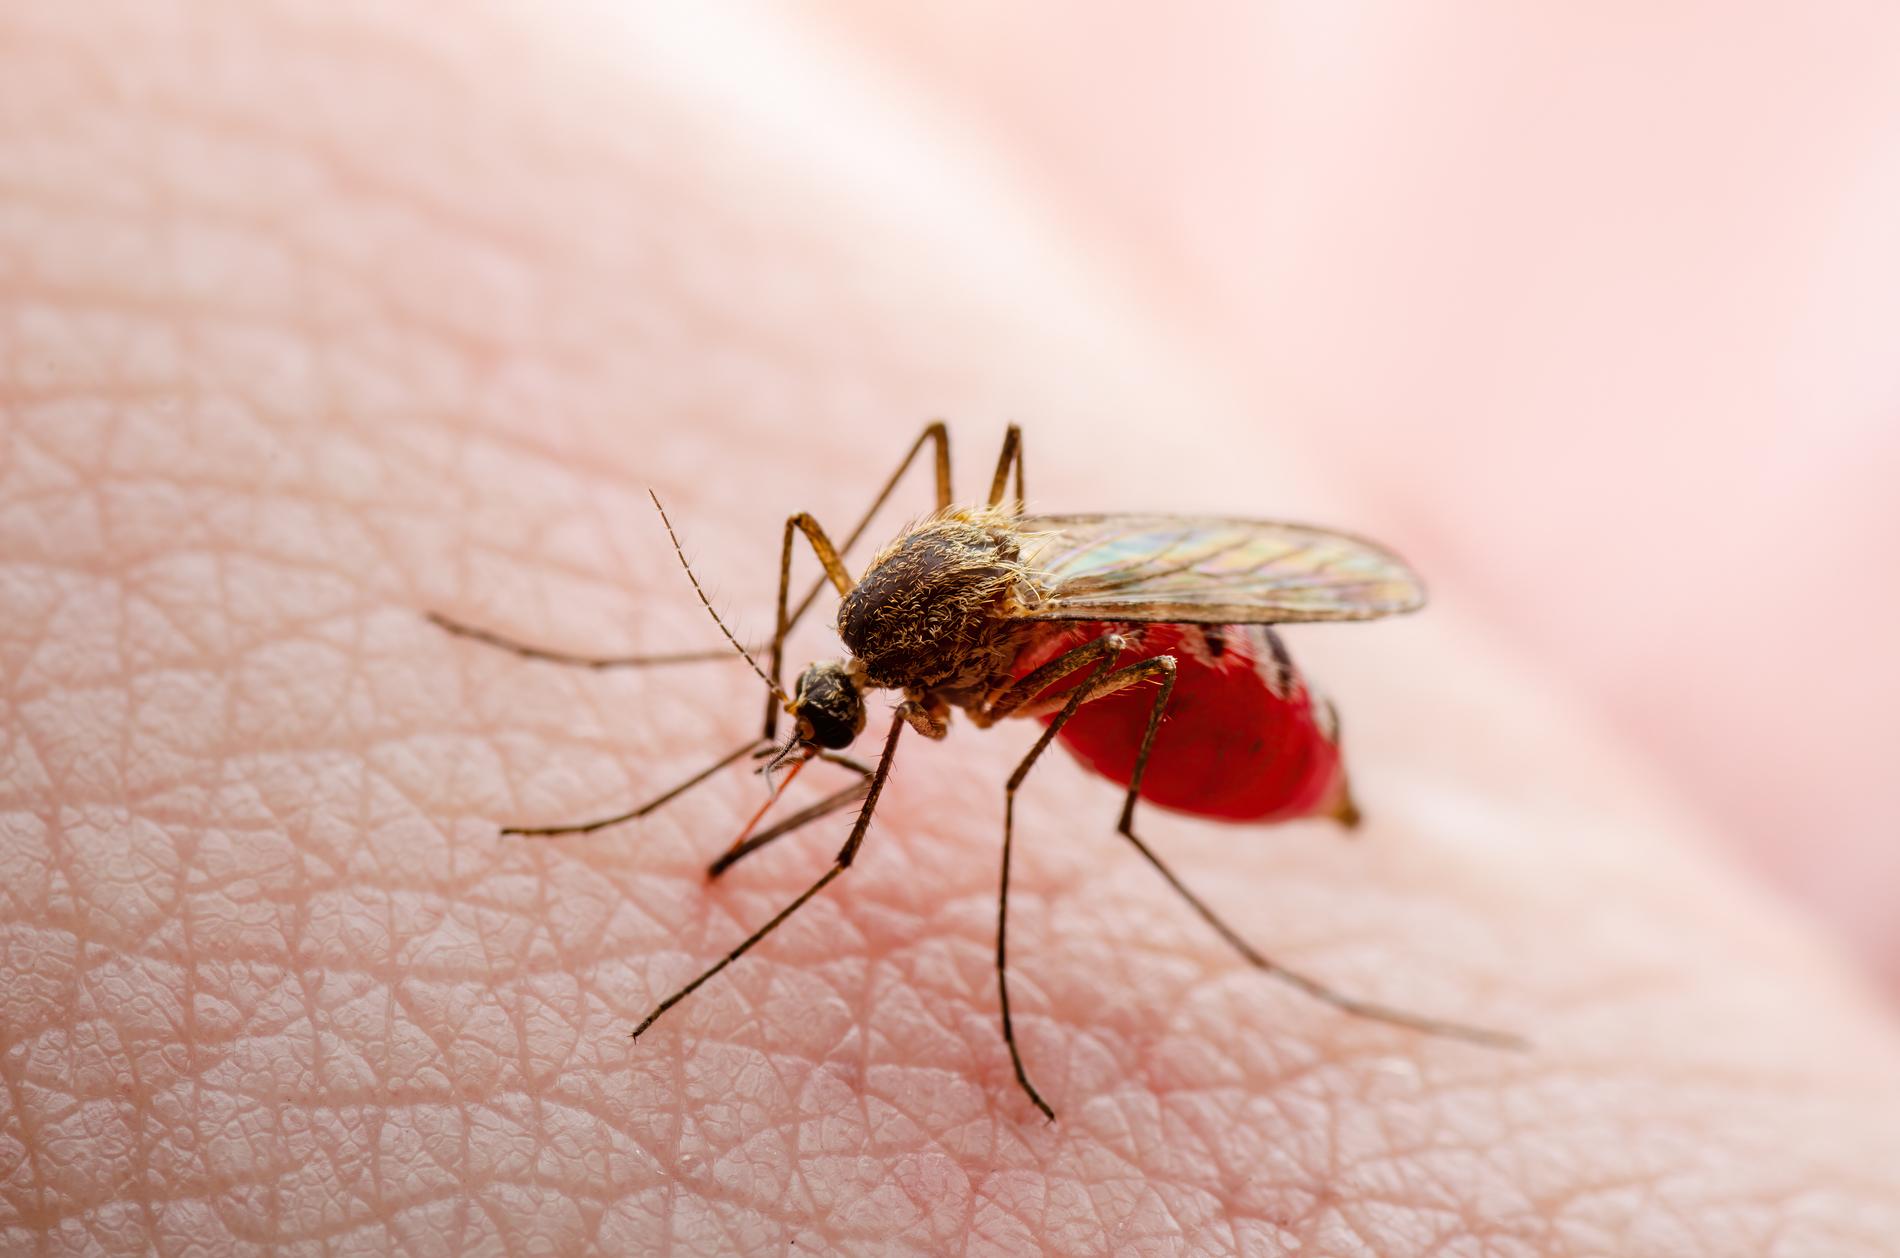 El Niño orsakar att fler drabbats av denguefeber i flera provinser i Peru. Nu utropas hälsonödläge.